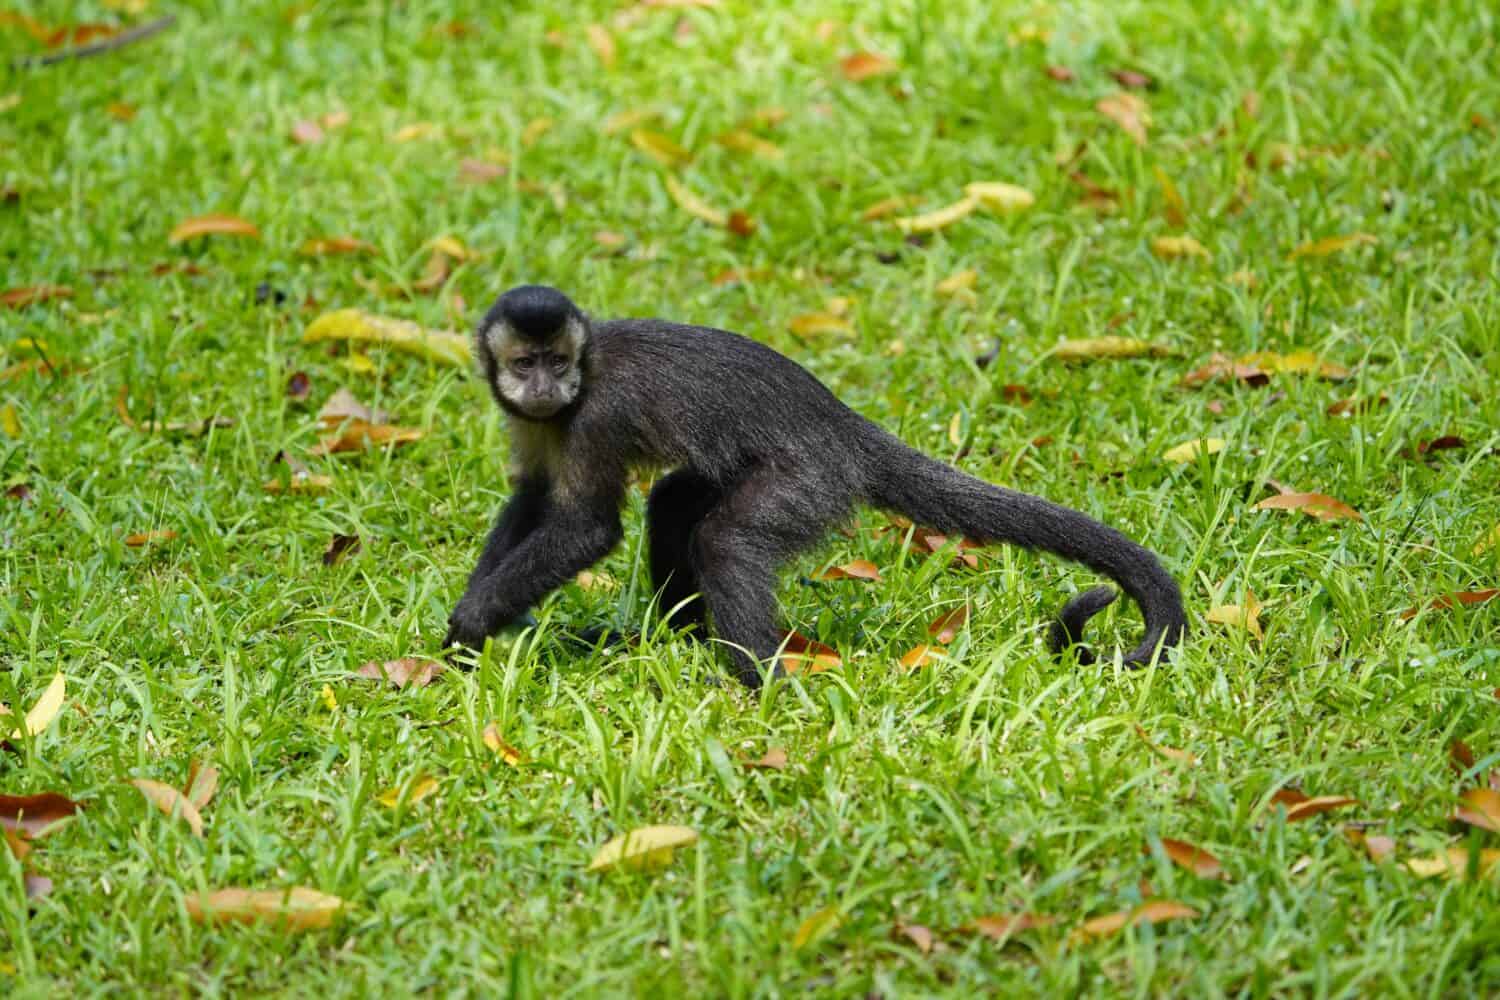 Il cappuccino nero (Sapajus nigritus), noto anche come cappuccino dalle corna nere, è una scimmia cappuccina della Foresta Atlantica nel Brasile sud-orientale e nell'estremo nord-est dell'Argentina.